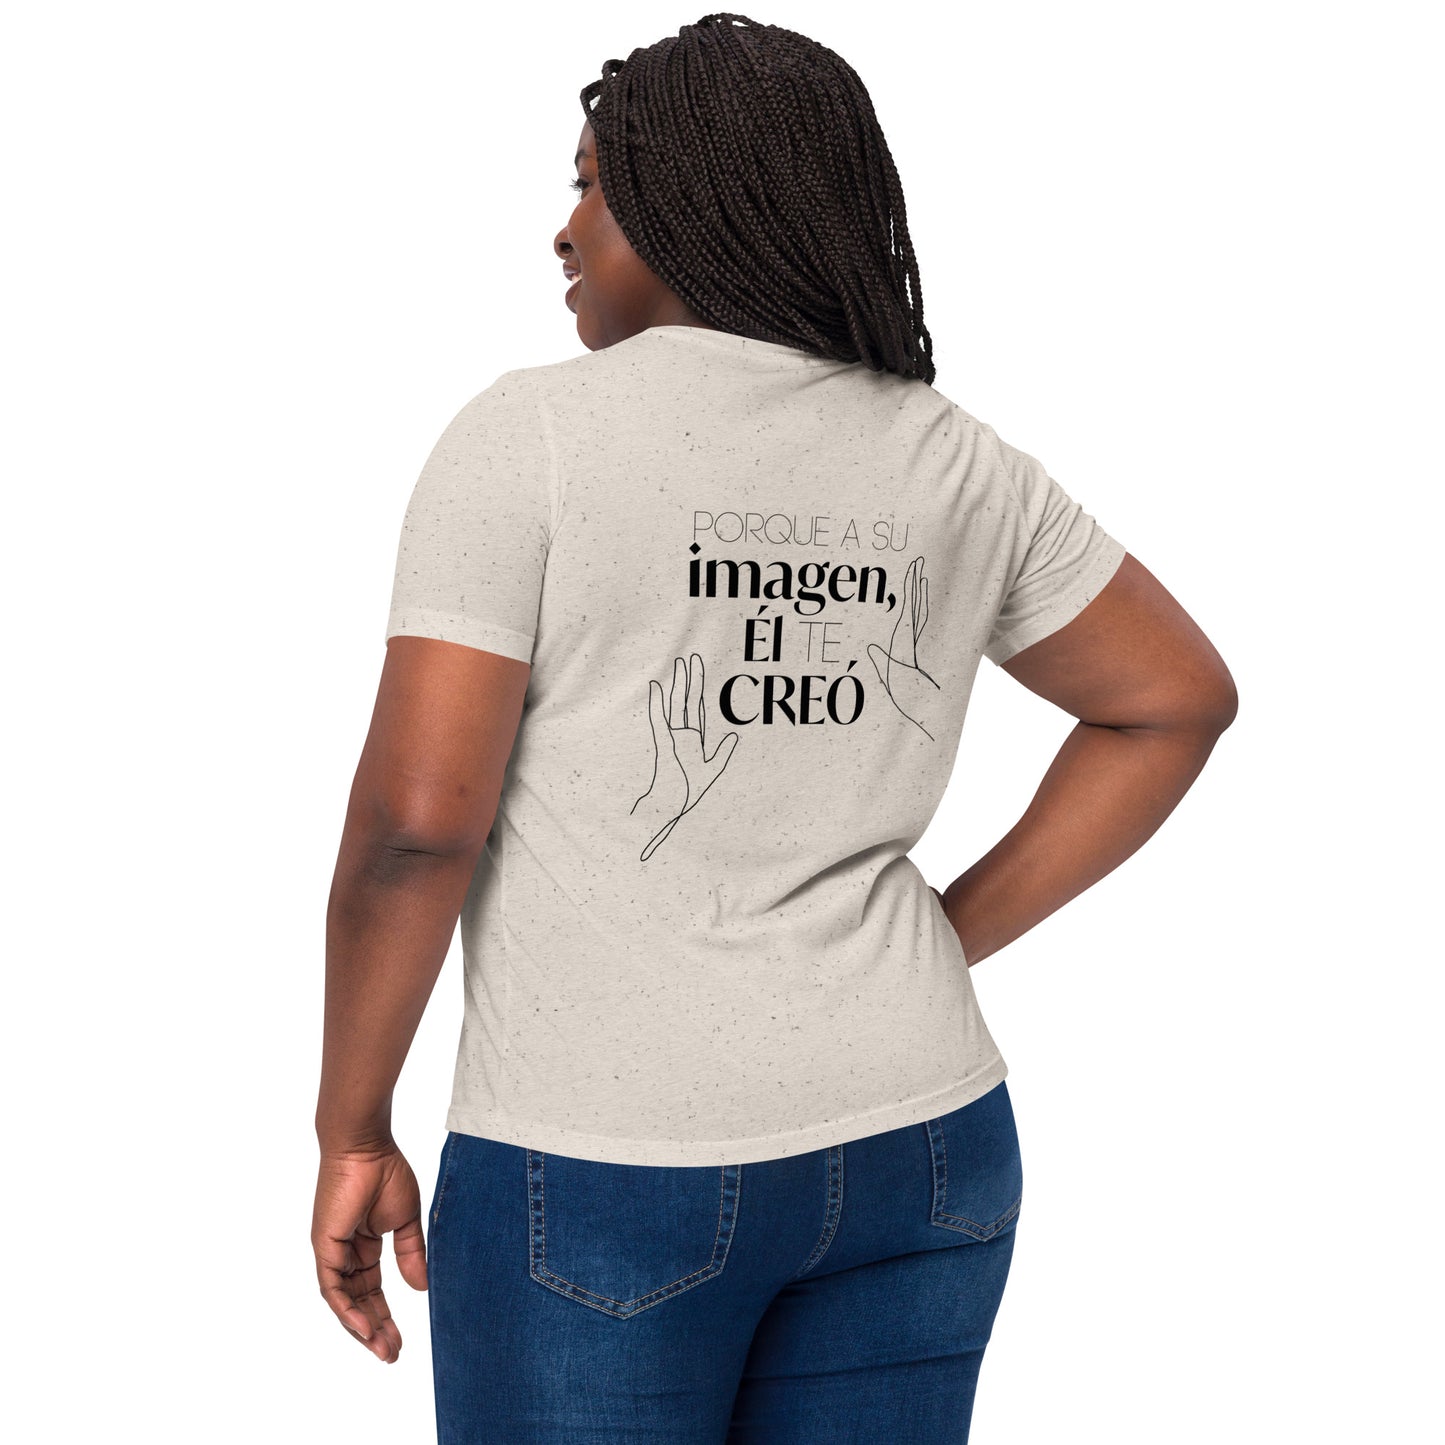 Camiseta mujer "El te creo a su imágen"